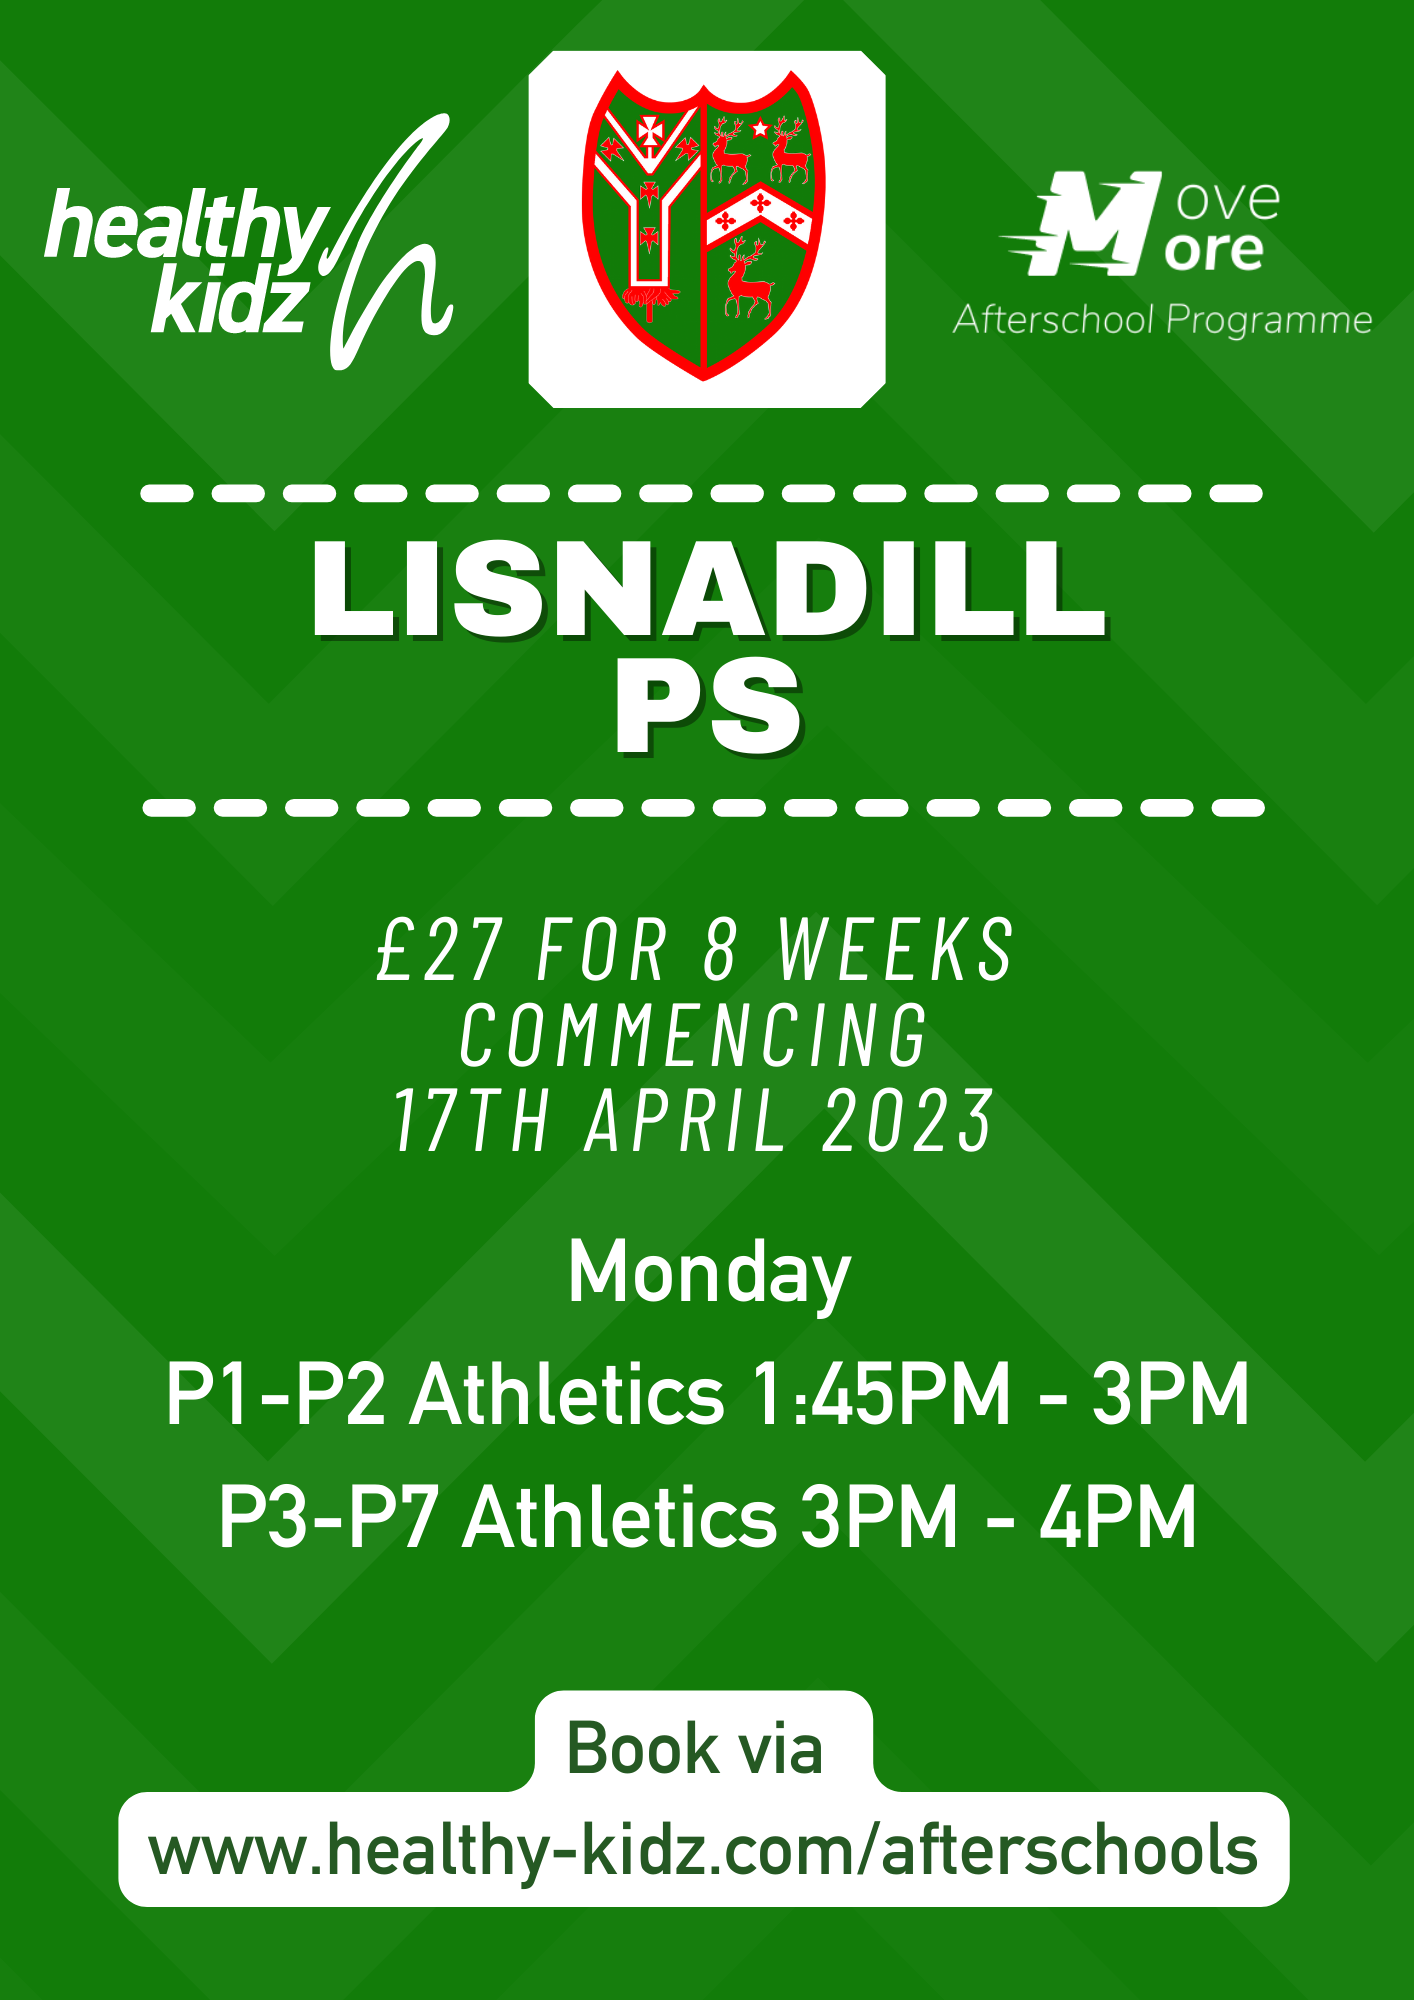 Healthy Kidz Afterschools at Lisnadill PS Term 3 (2022/23)